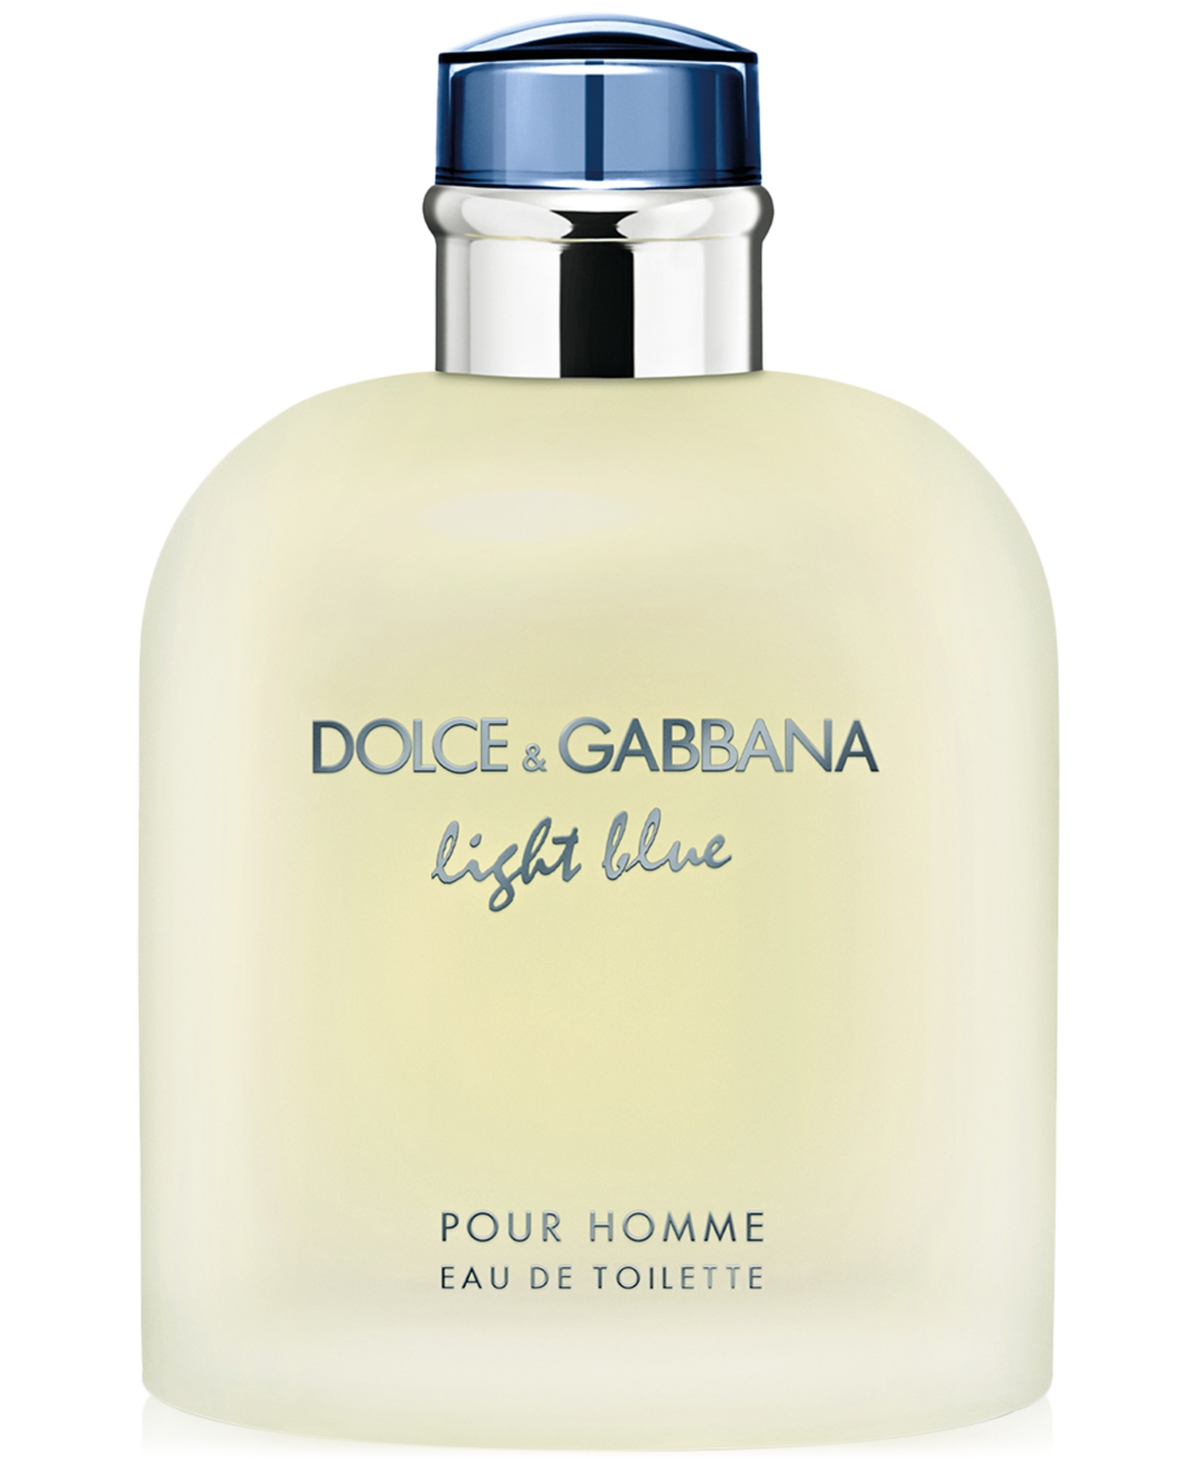 Dolce&Gabbana Men's Light Blue Pour Homme Eau de Toilette Spray, 6.7 oz.